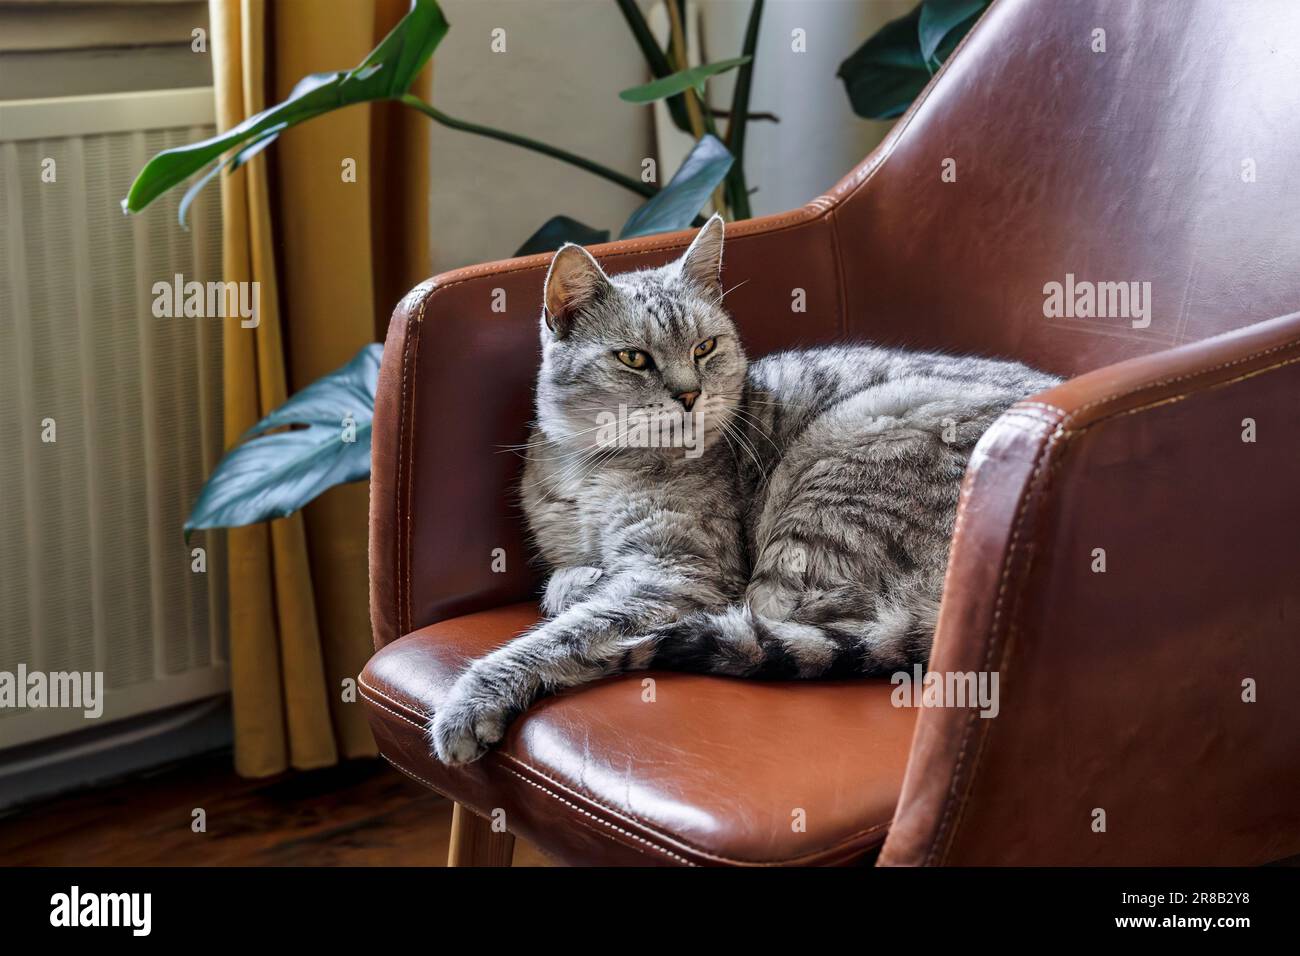 Un gatto domestico grigio bello con gli occhi gialli siede in una poltrona marrone in un interno domestico Foto Stock